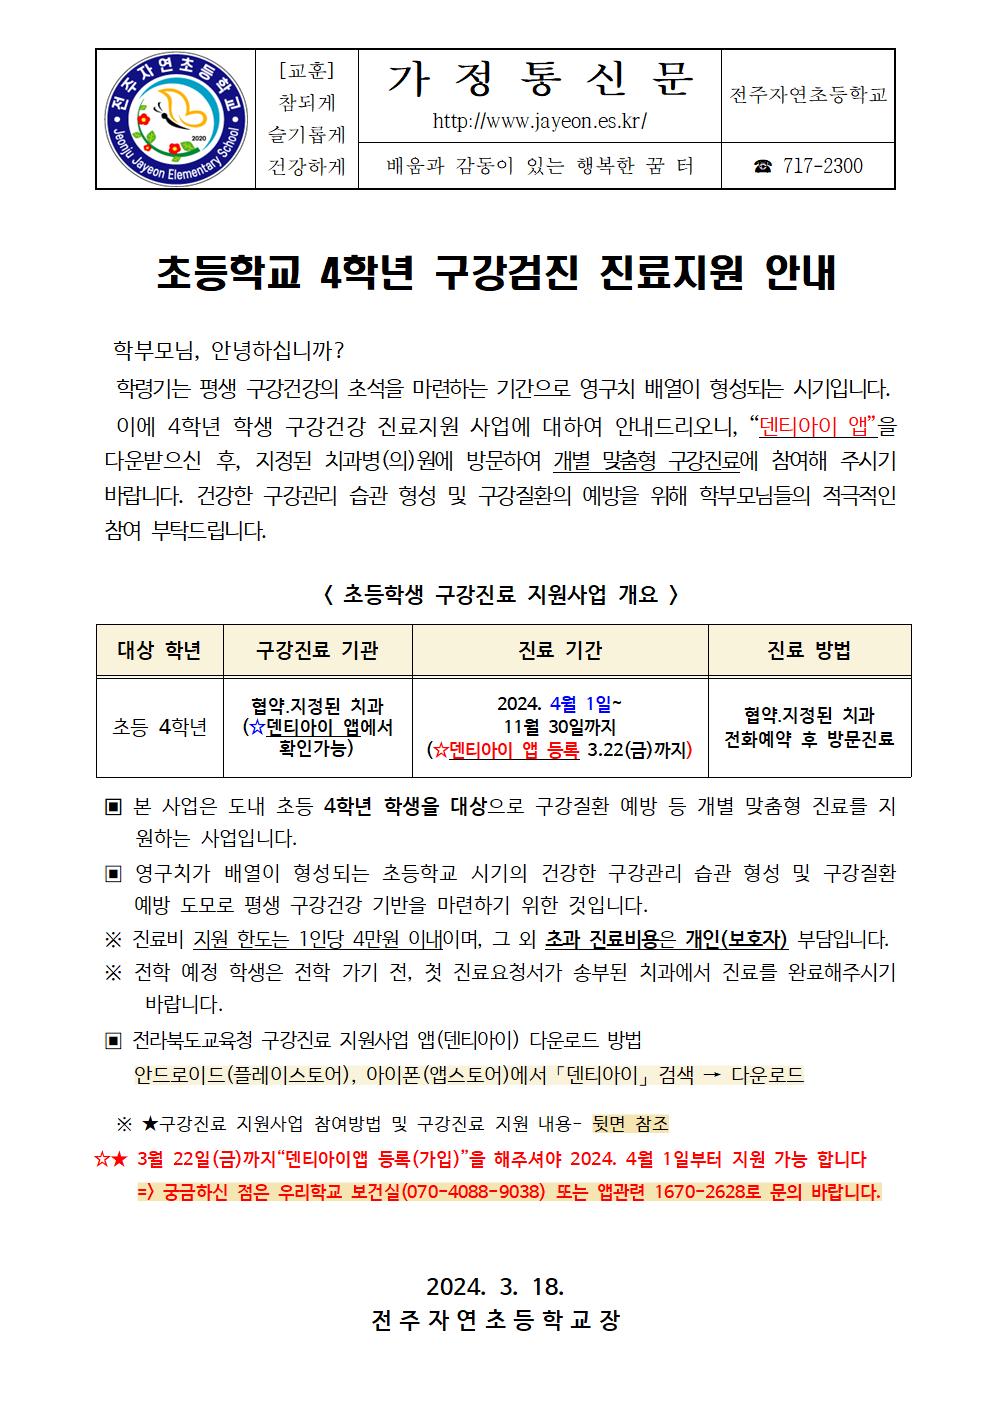 초등학교 4학년 구강검진 진료지원 안내문001